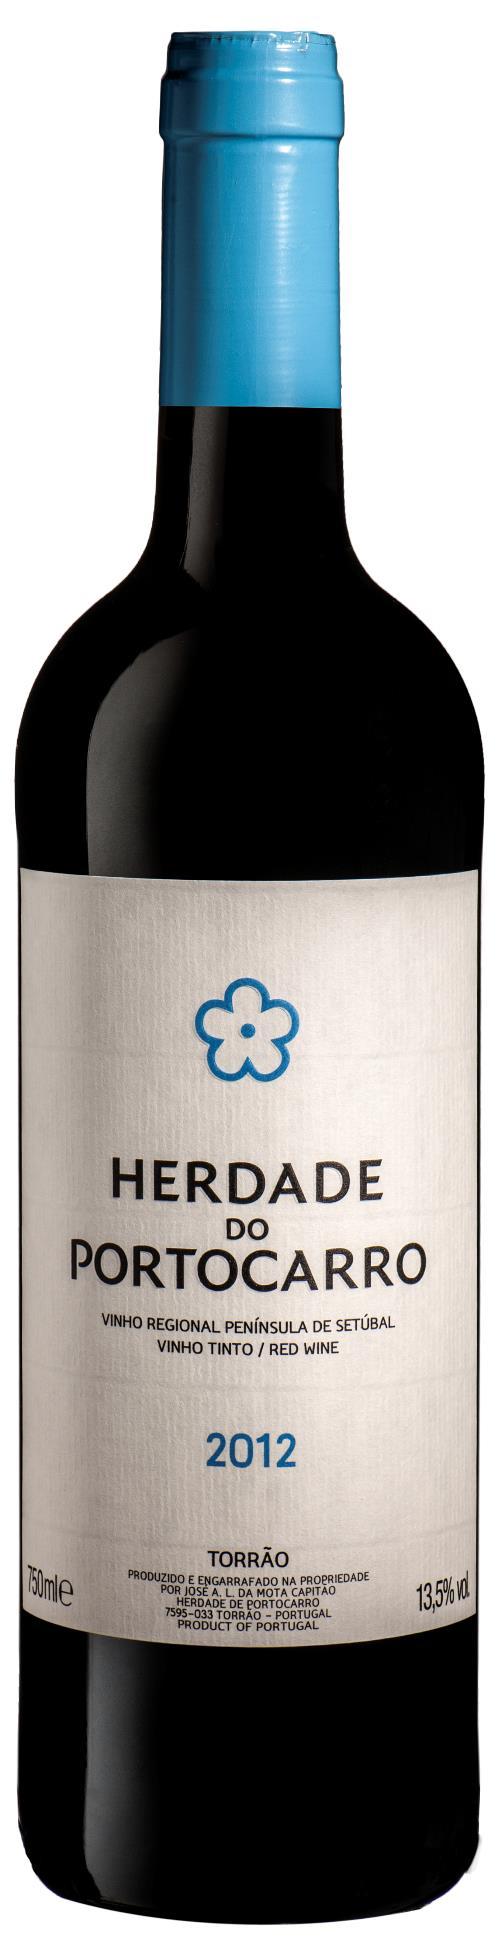 Nomeado para produtor do ano em 2015 e tendo conquistado o título de Produtor do Ano em 2016 pela mais conceituada revista de vinhos portuguesa Wine Essência do Vinho a Herdade do Portocarro tem-se